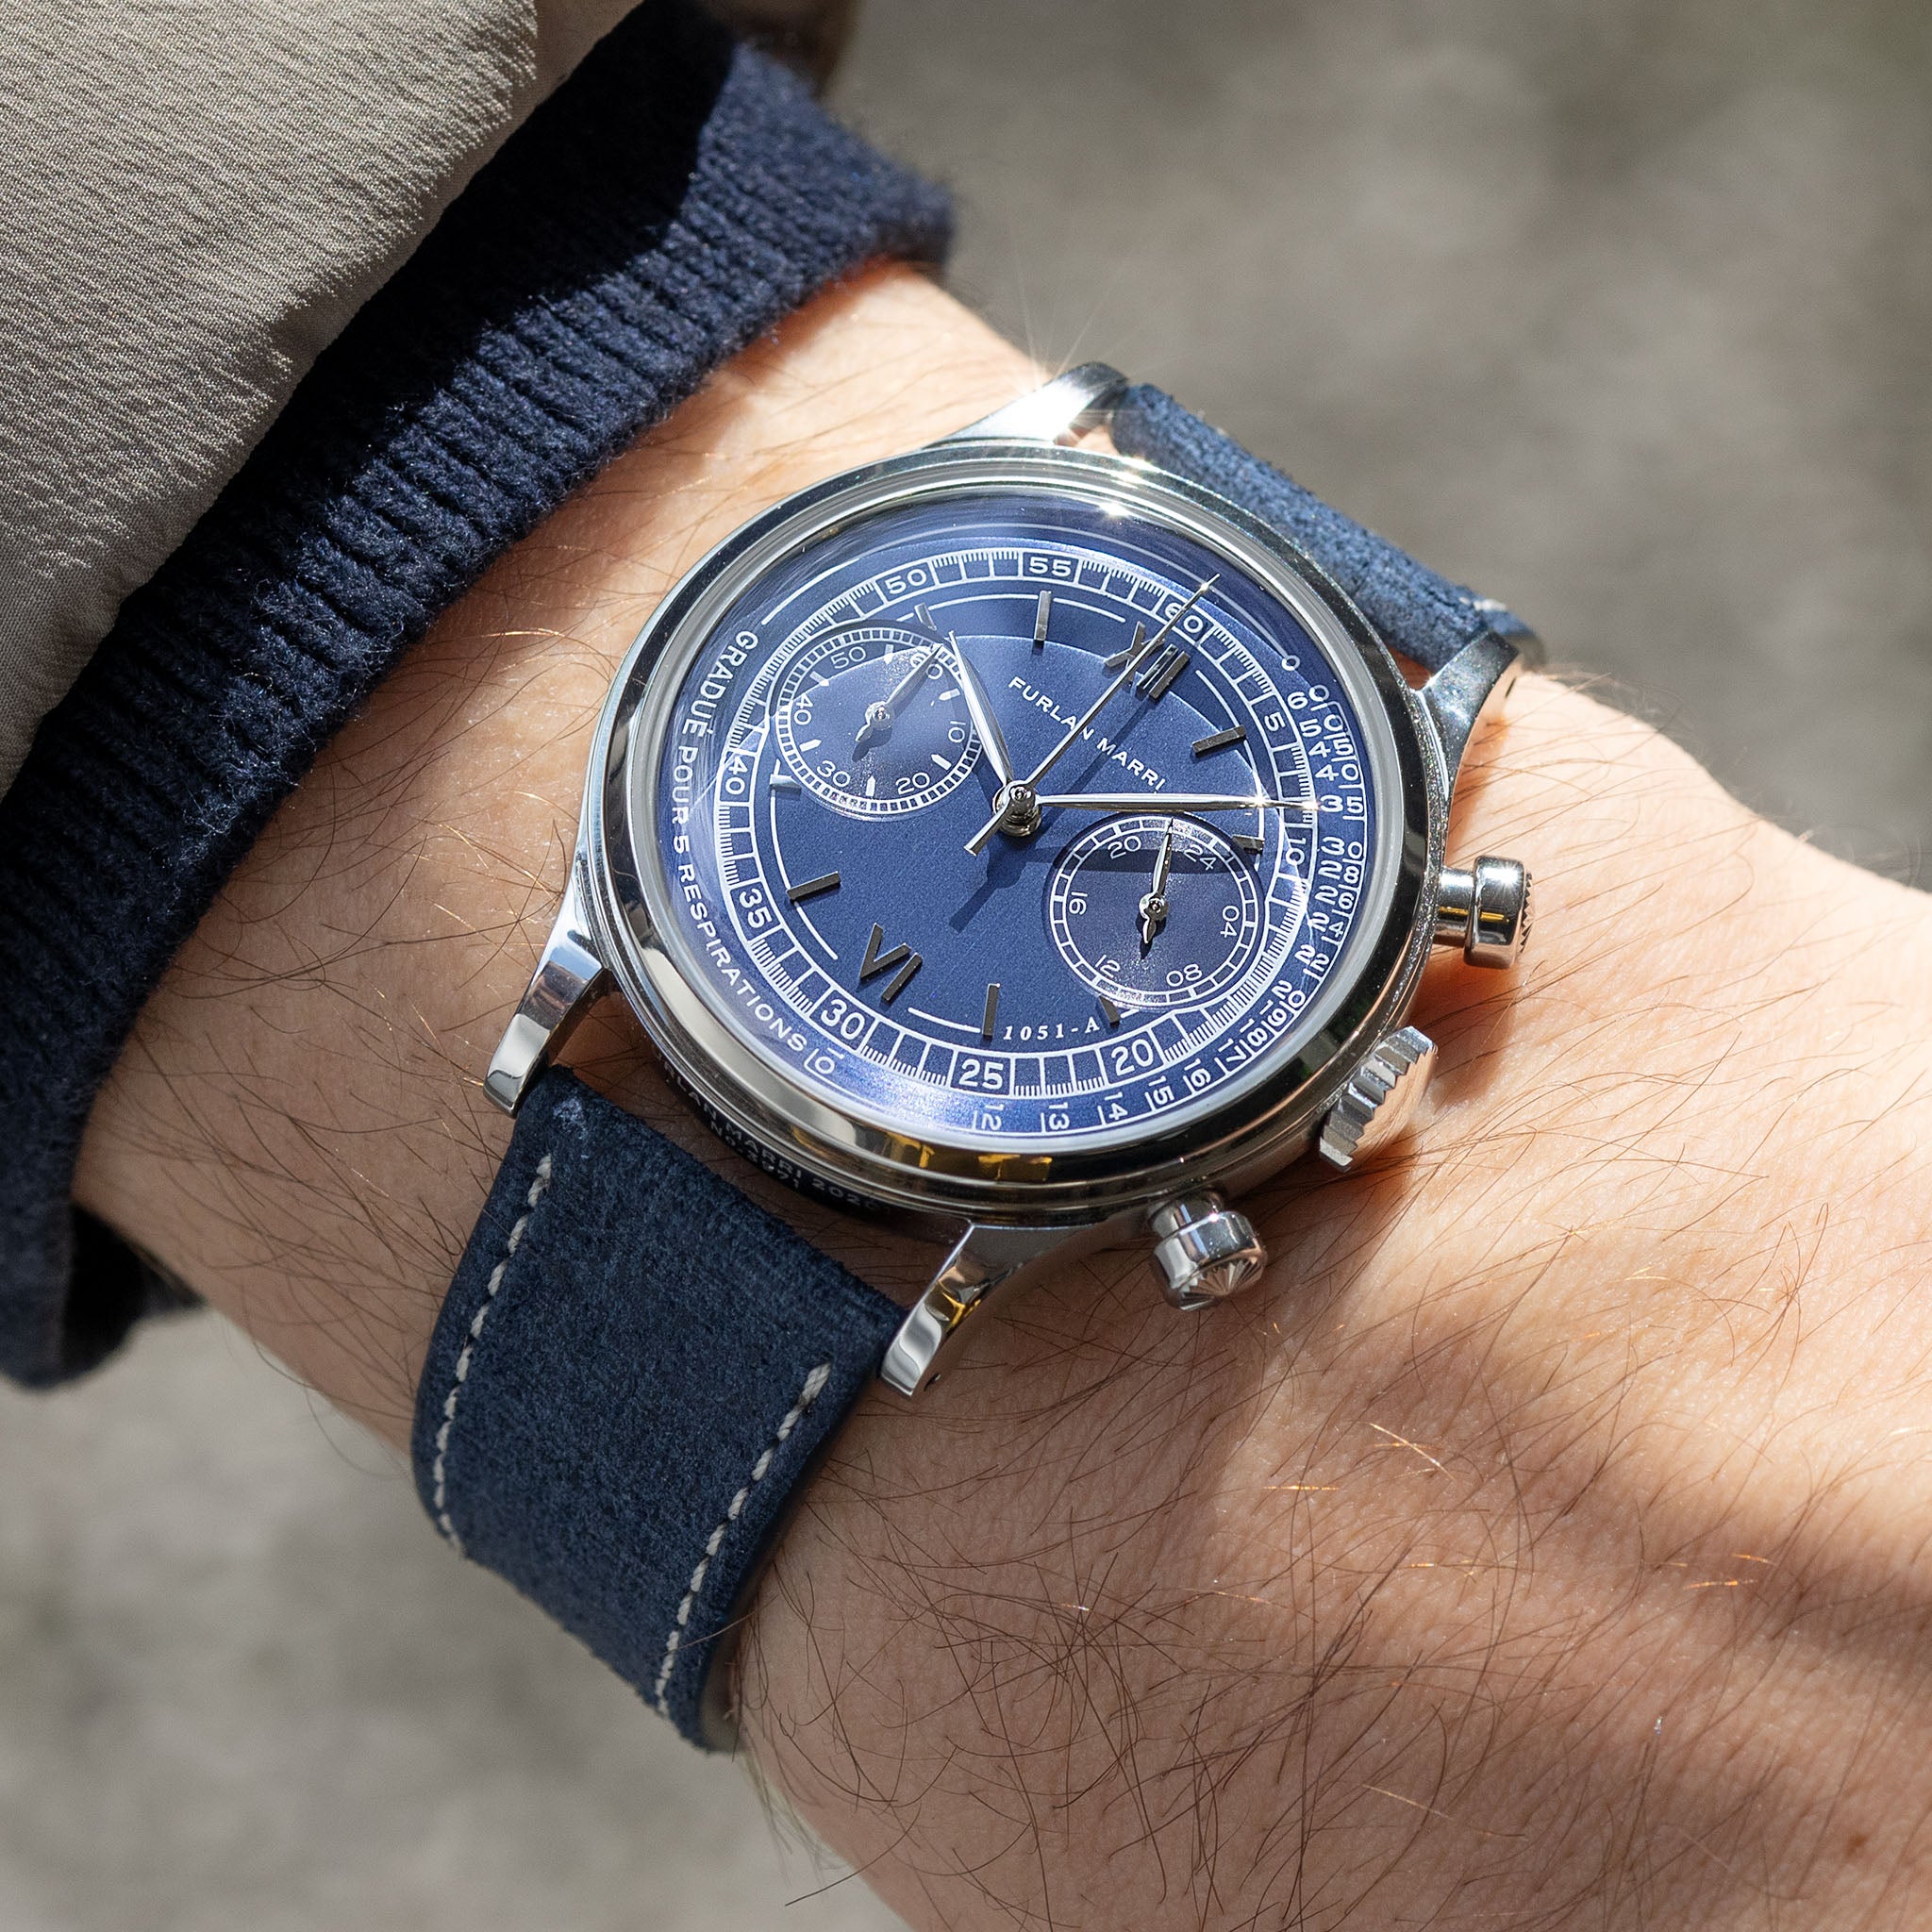 Furlan Marri "Mare Blu" 1051-A Tasti Tondi chronograph - incoming